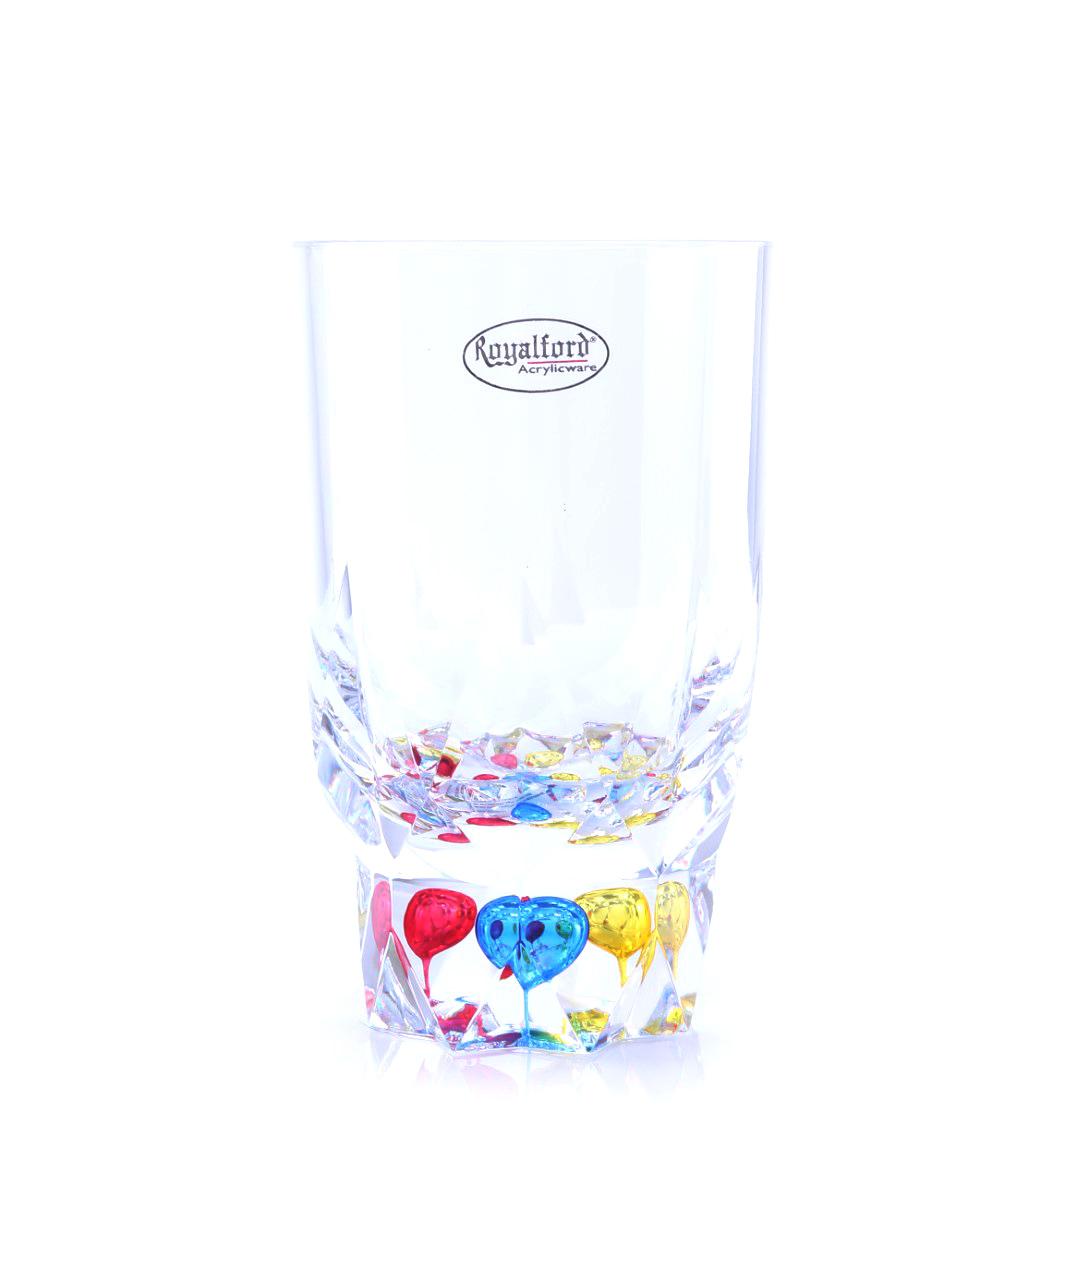 كأس زجاجي بقاعدة كريستال - 410 مل Acrylic Glass With Crystal Base - Royalford